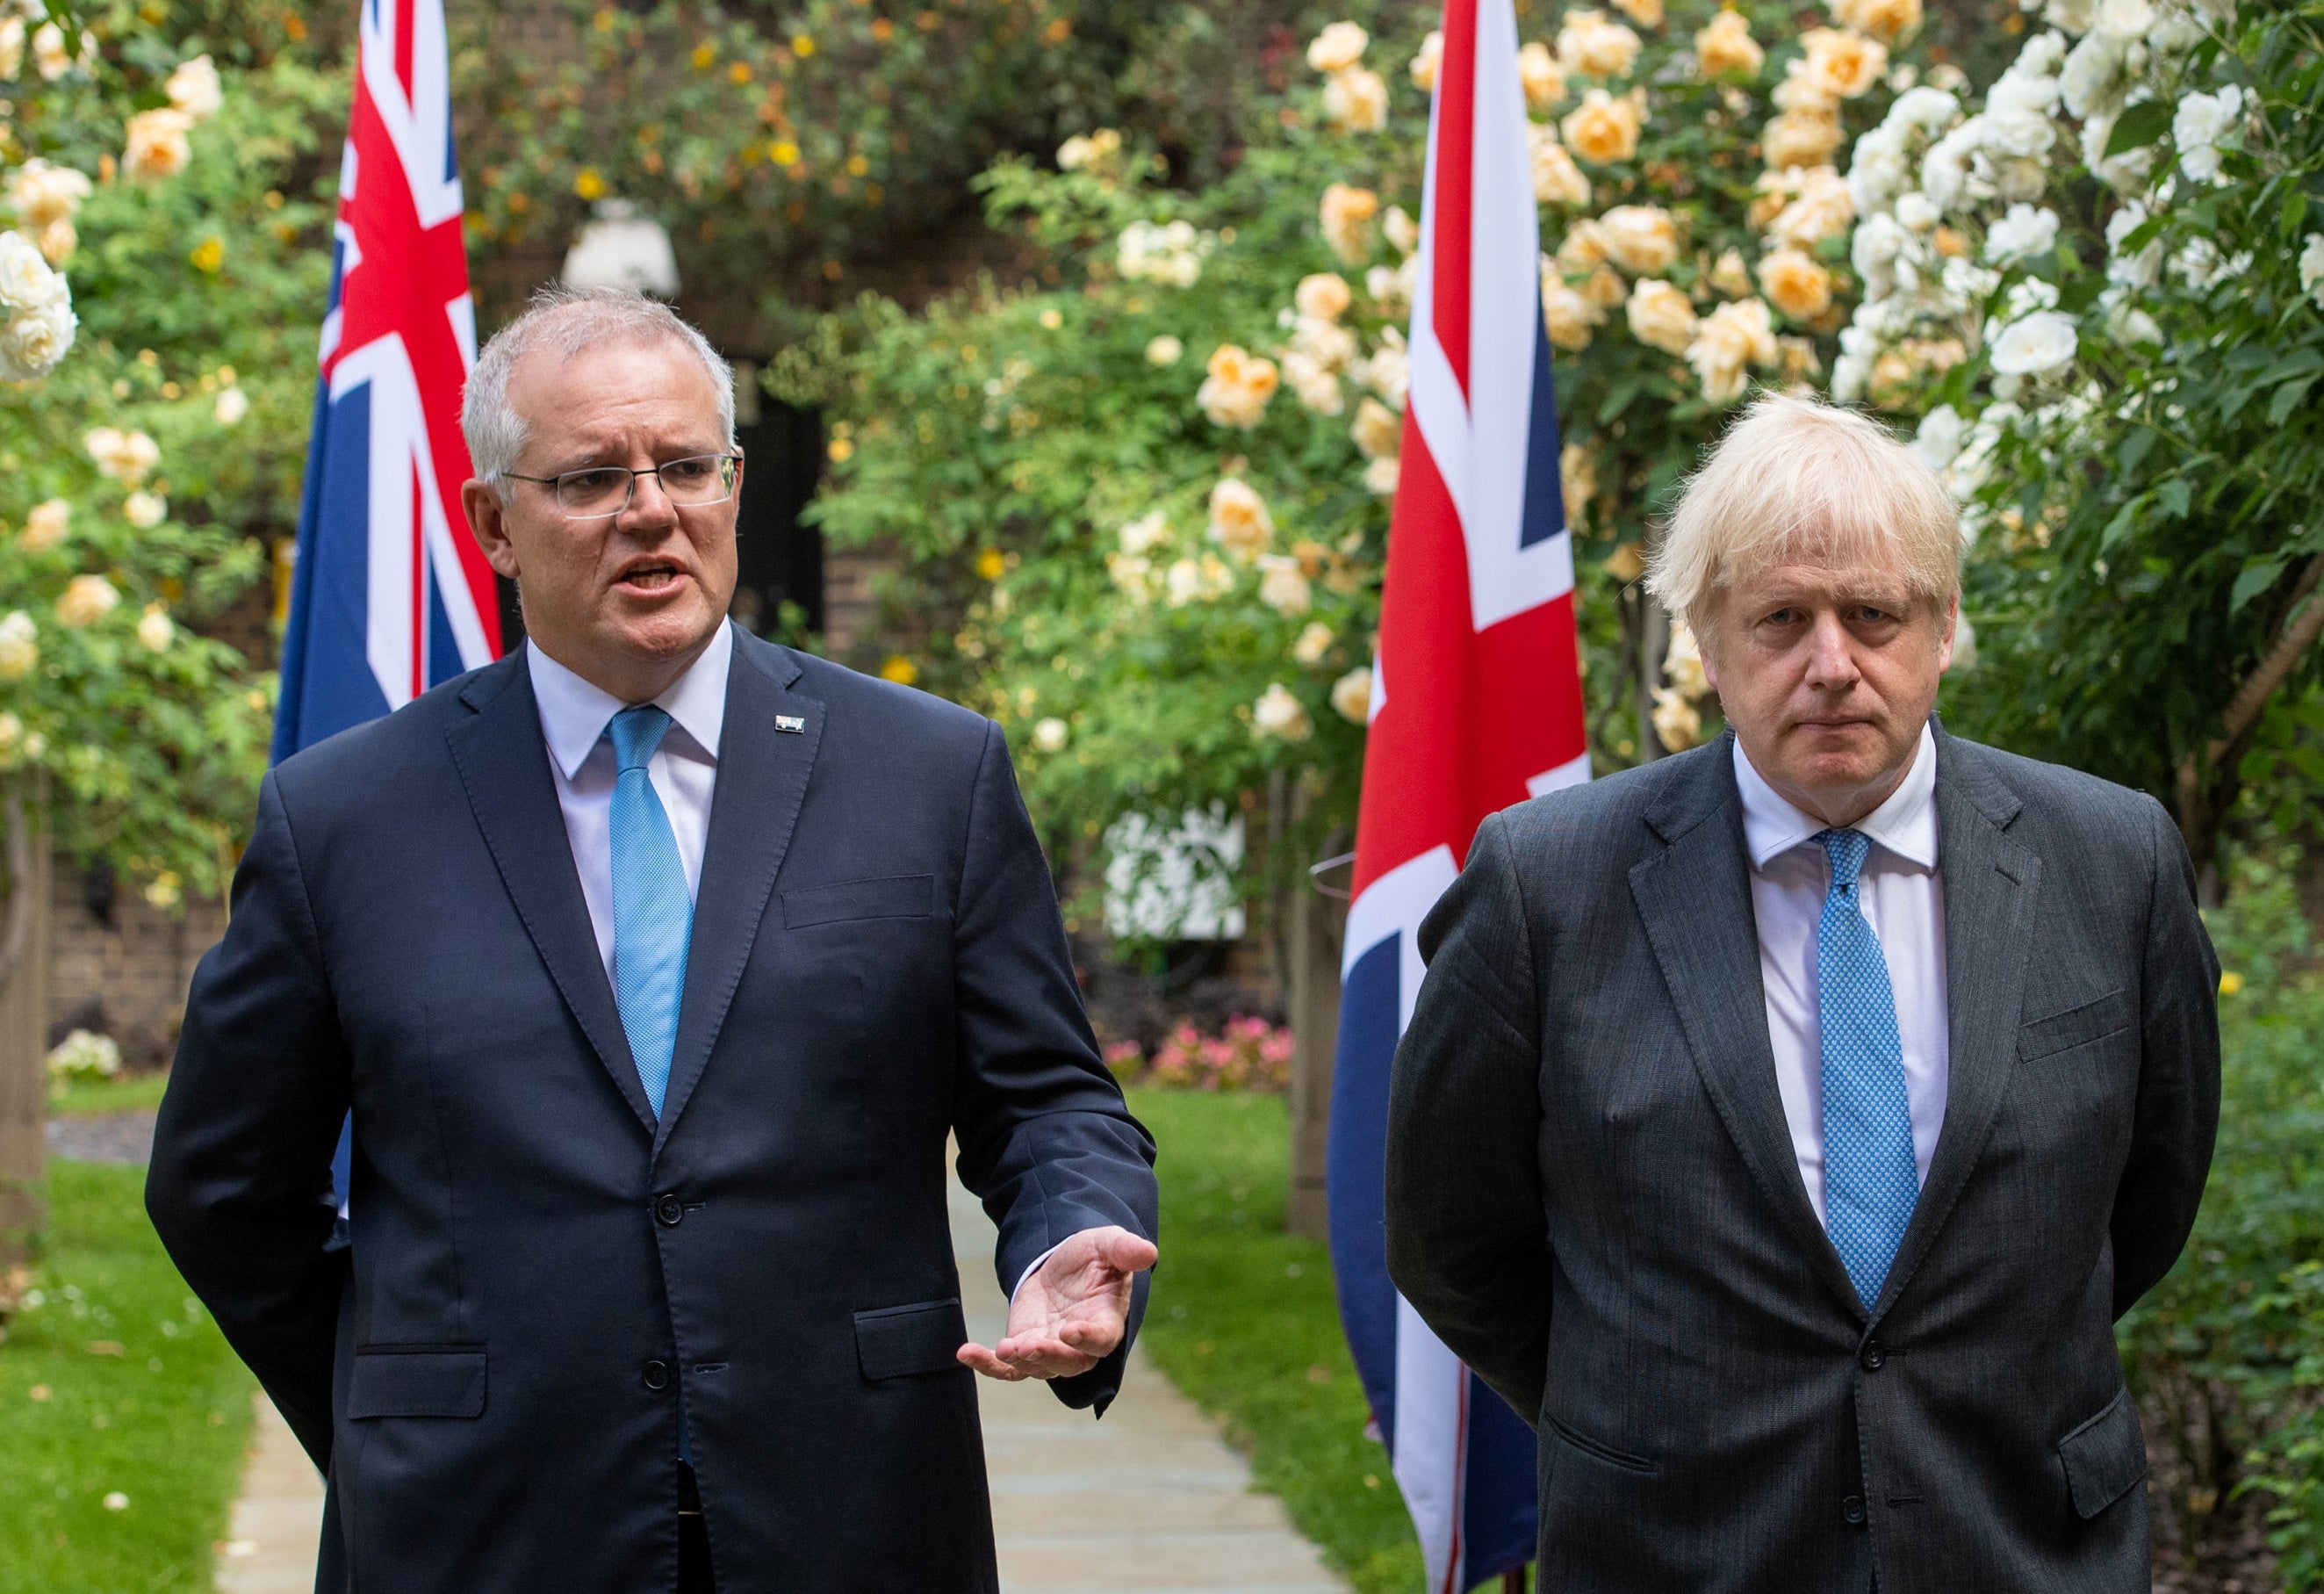 Boris Johnson looks on as Australia’s Prime Minister Scott Morrison speaks at No10 on Tuesday